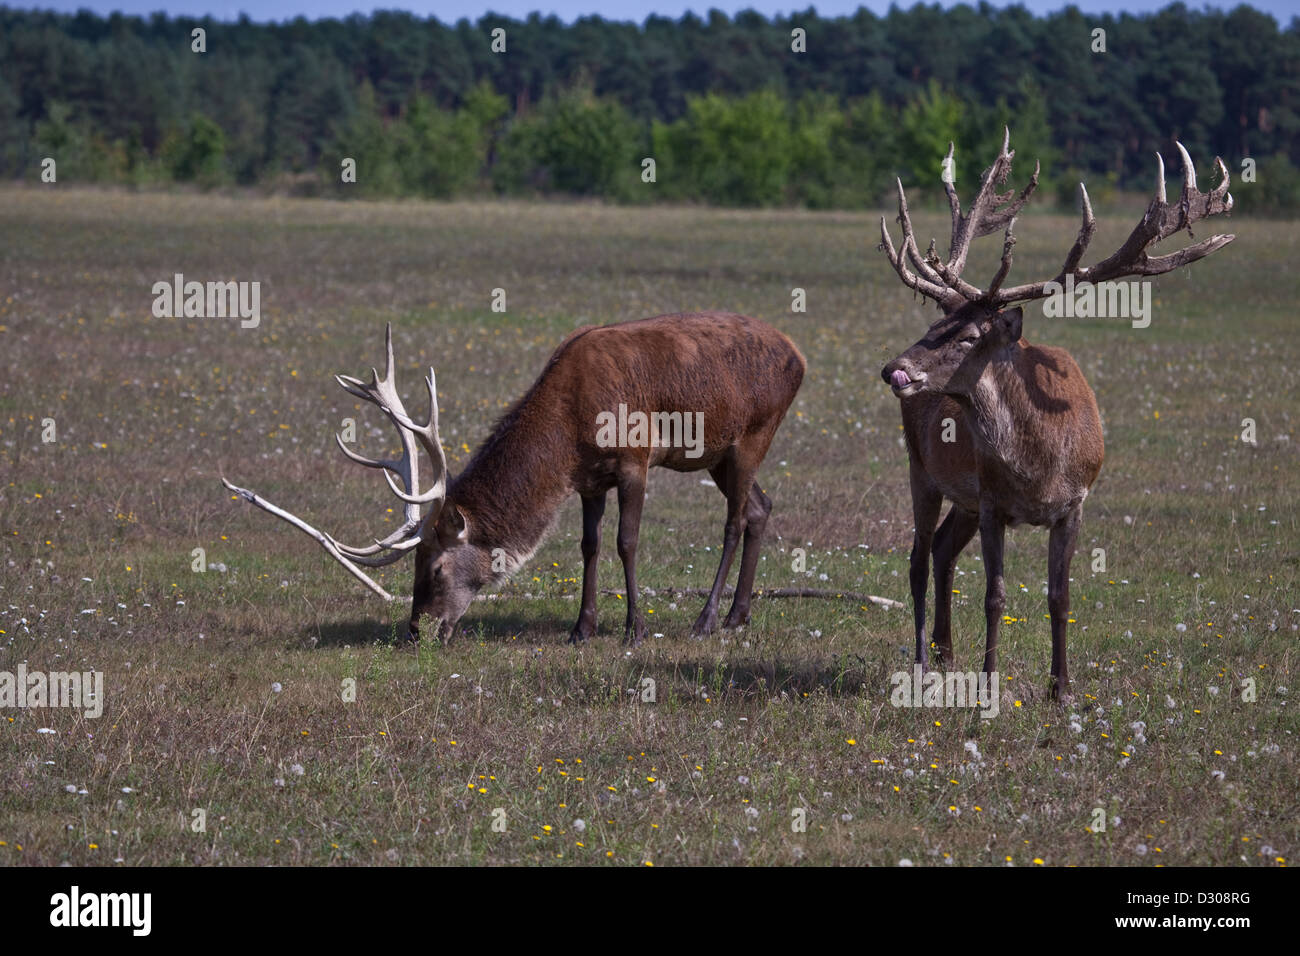 Zwei äsende Rothirsche / two Red deer Stock Photo